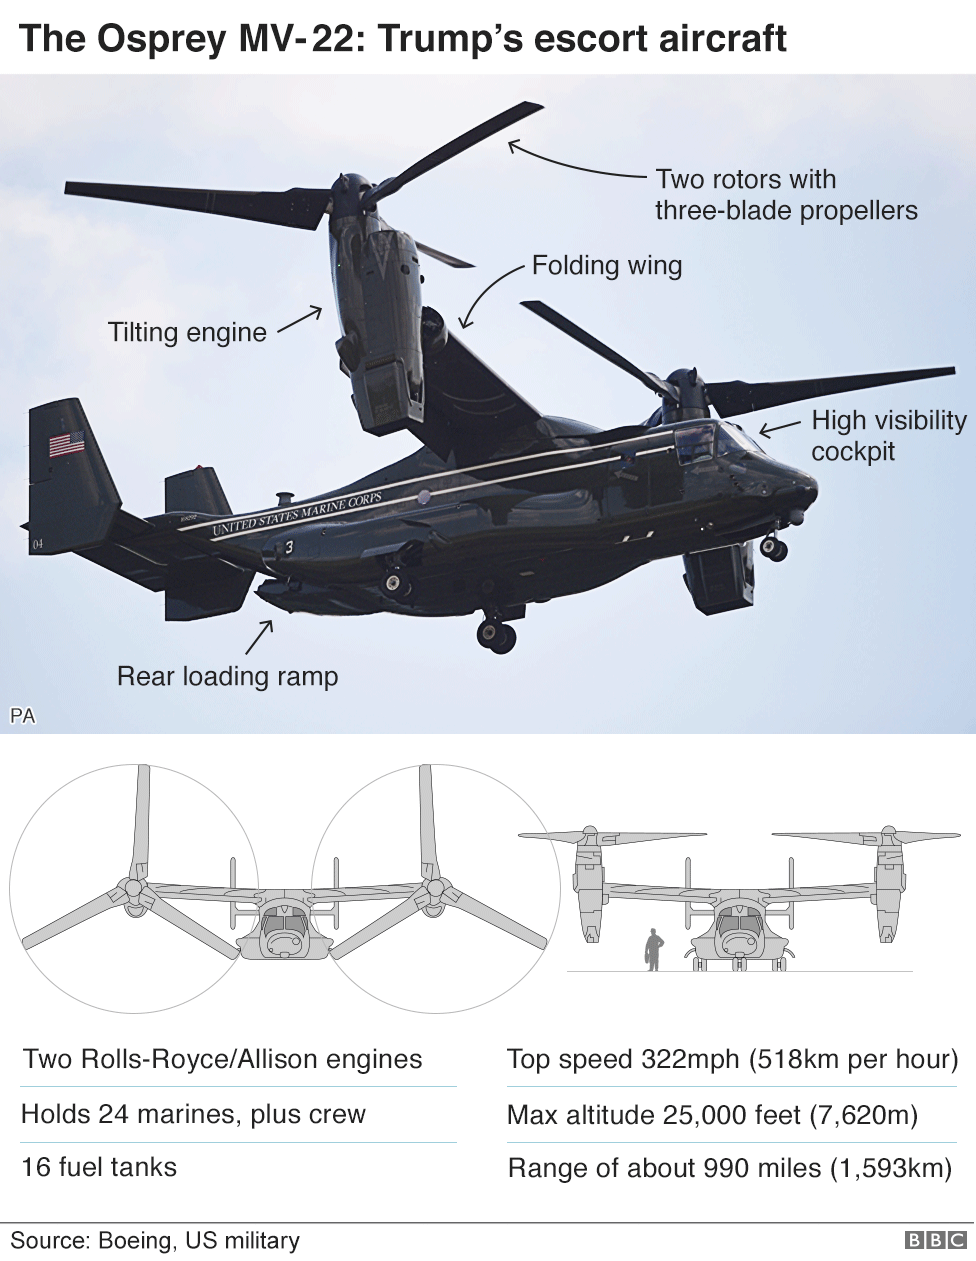 Инфографика самолета Osprey MV-22